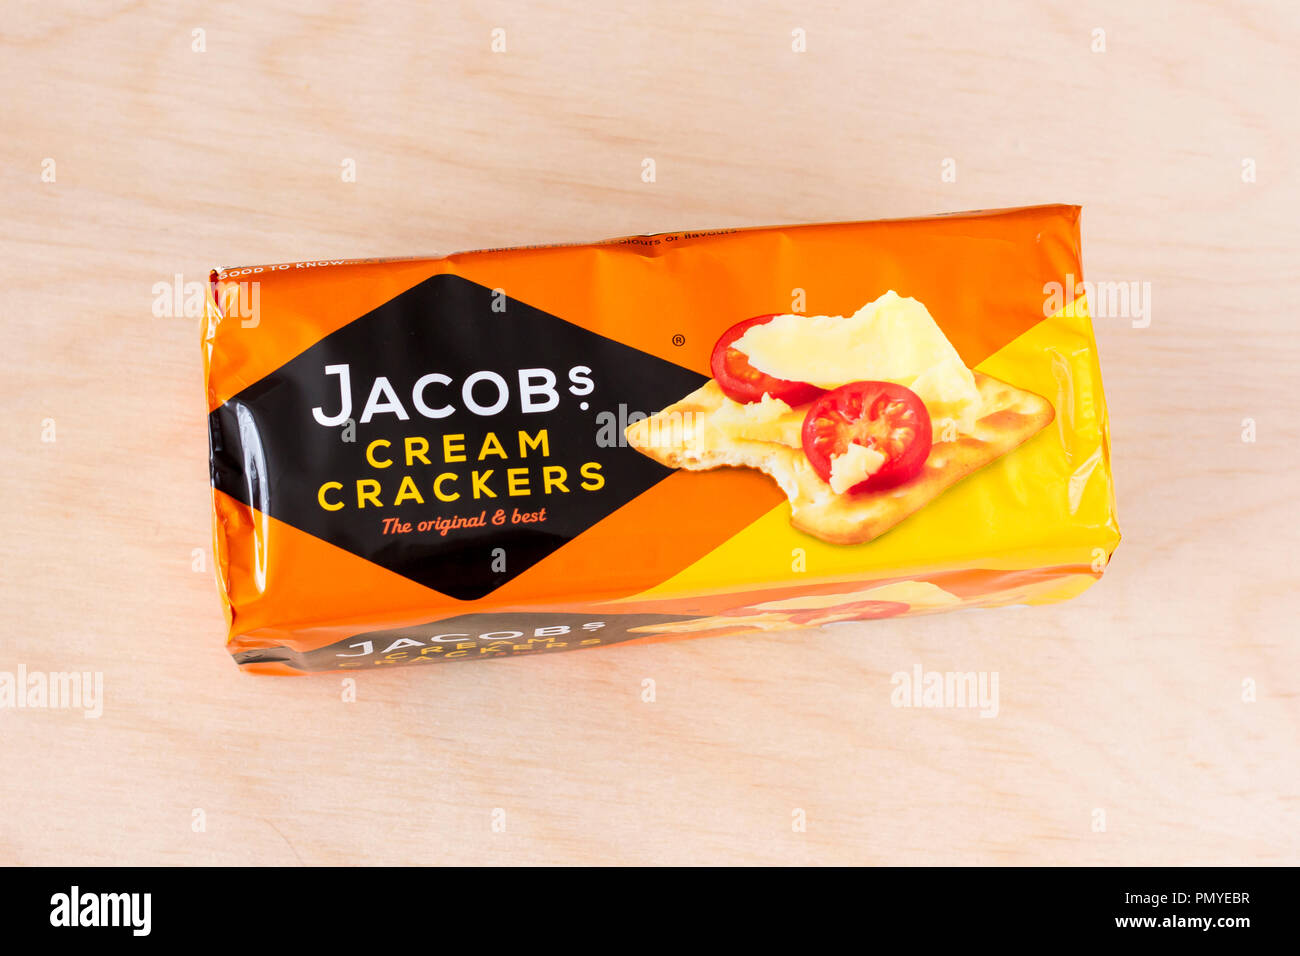 Jacob's Cream Crackers, paquet de crackers non ouvert sur un fond en bois clair, England, UK Banque D'Images